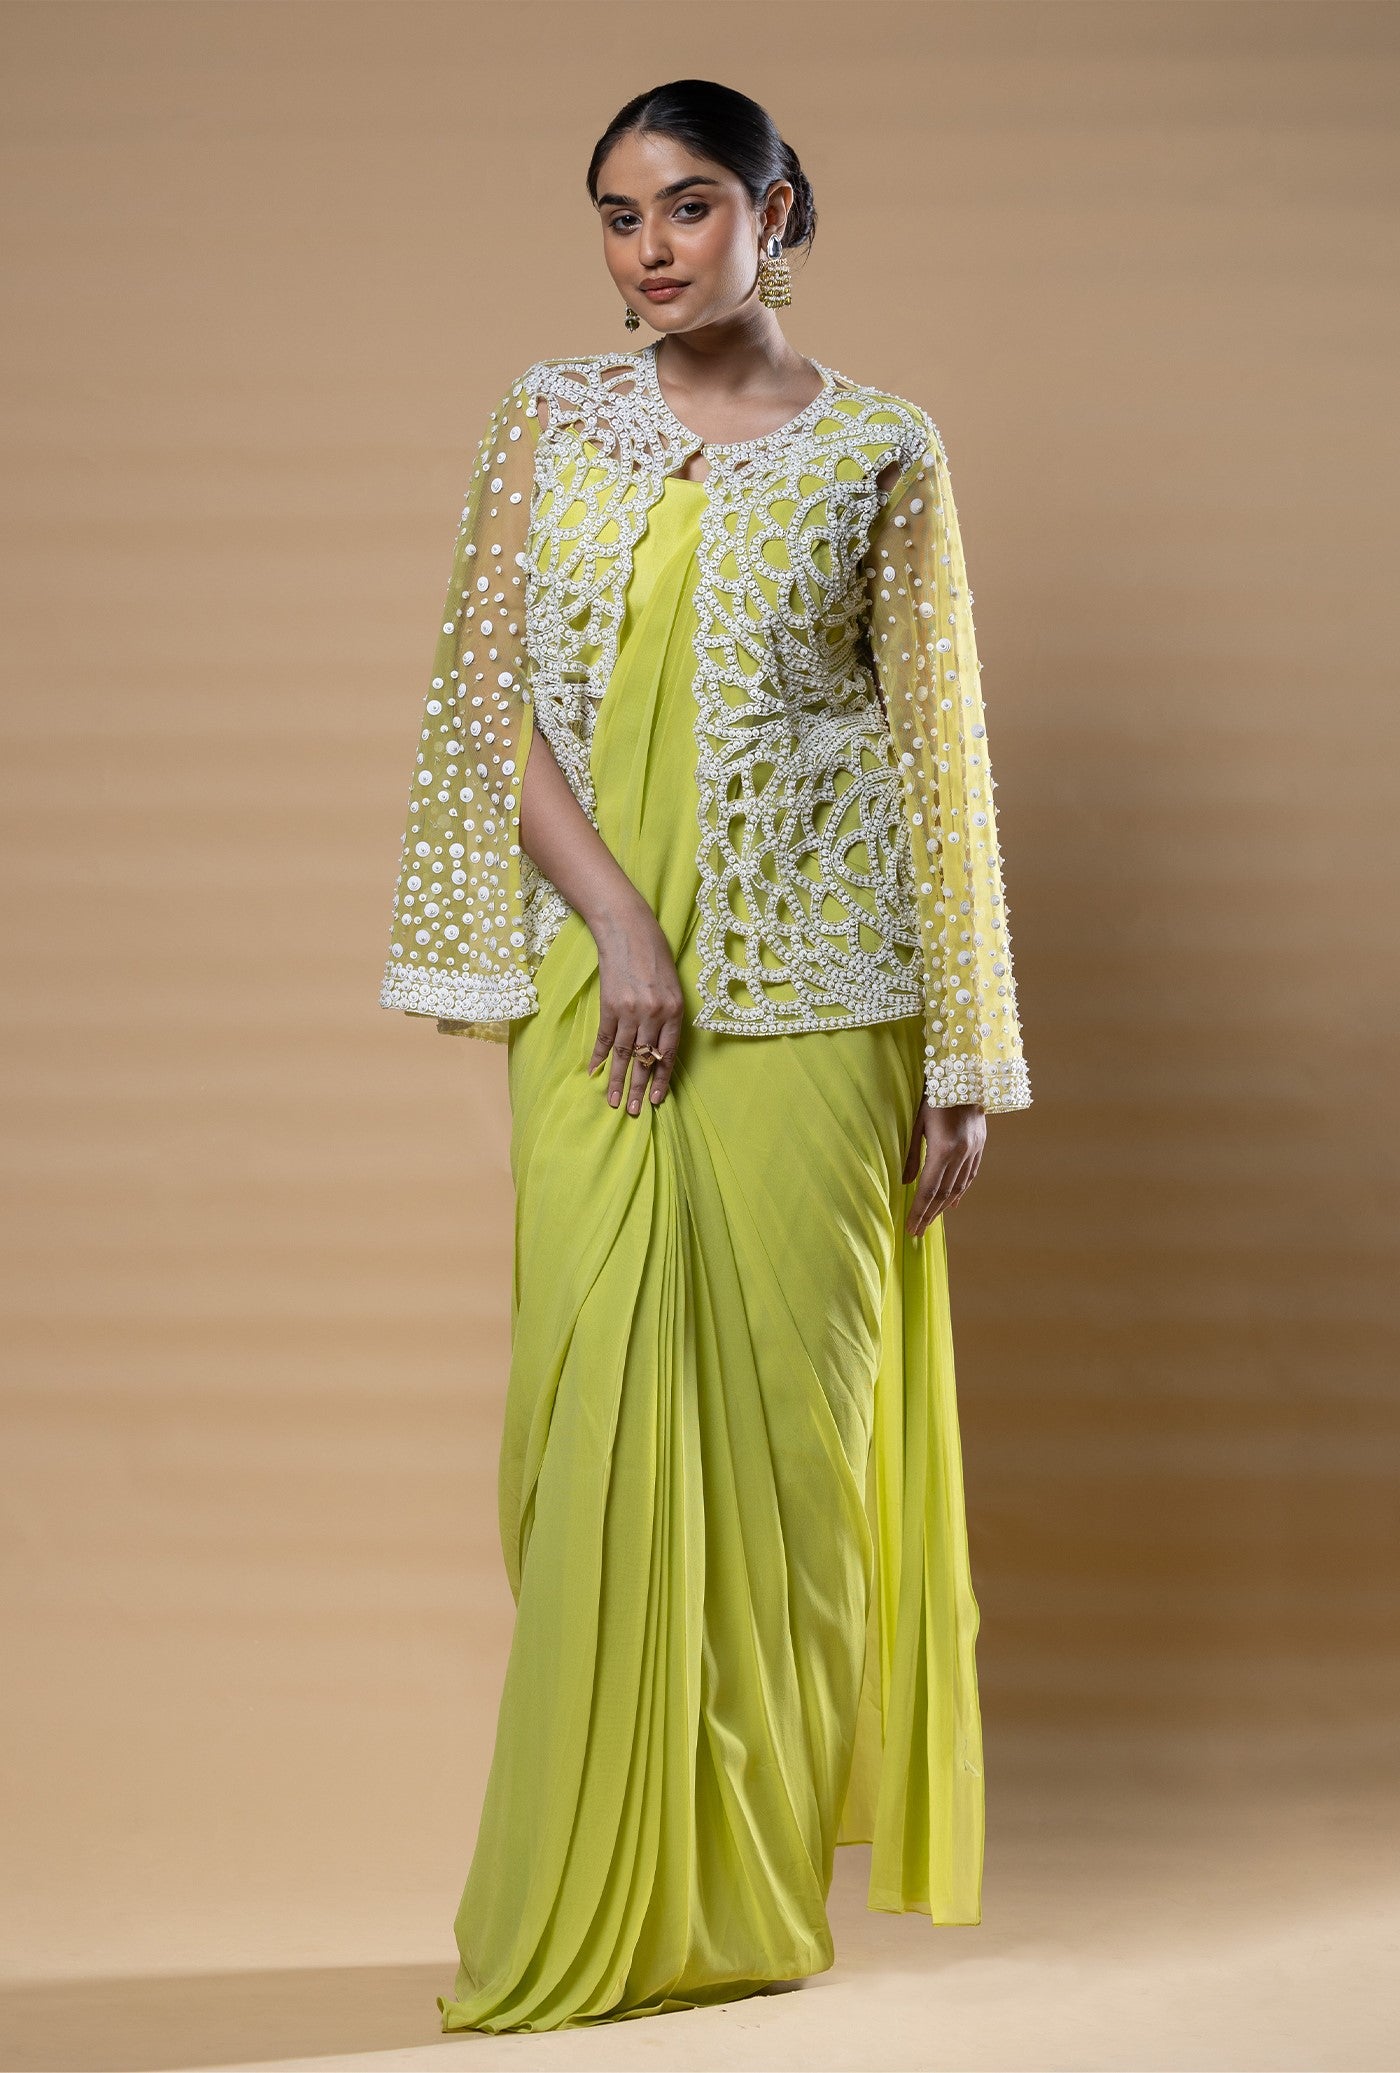 Vrushti drape saree with blouse